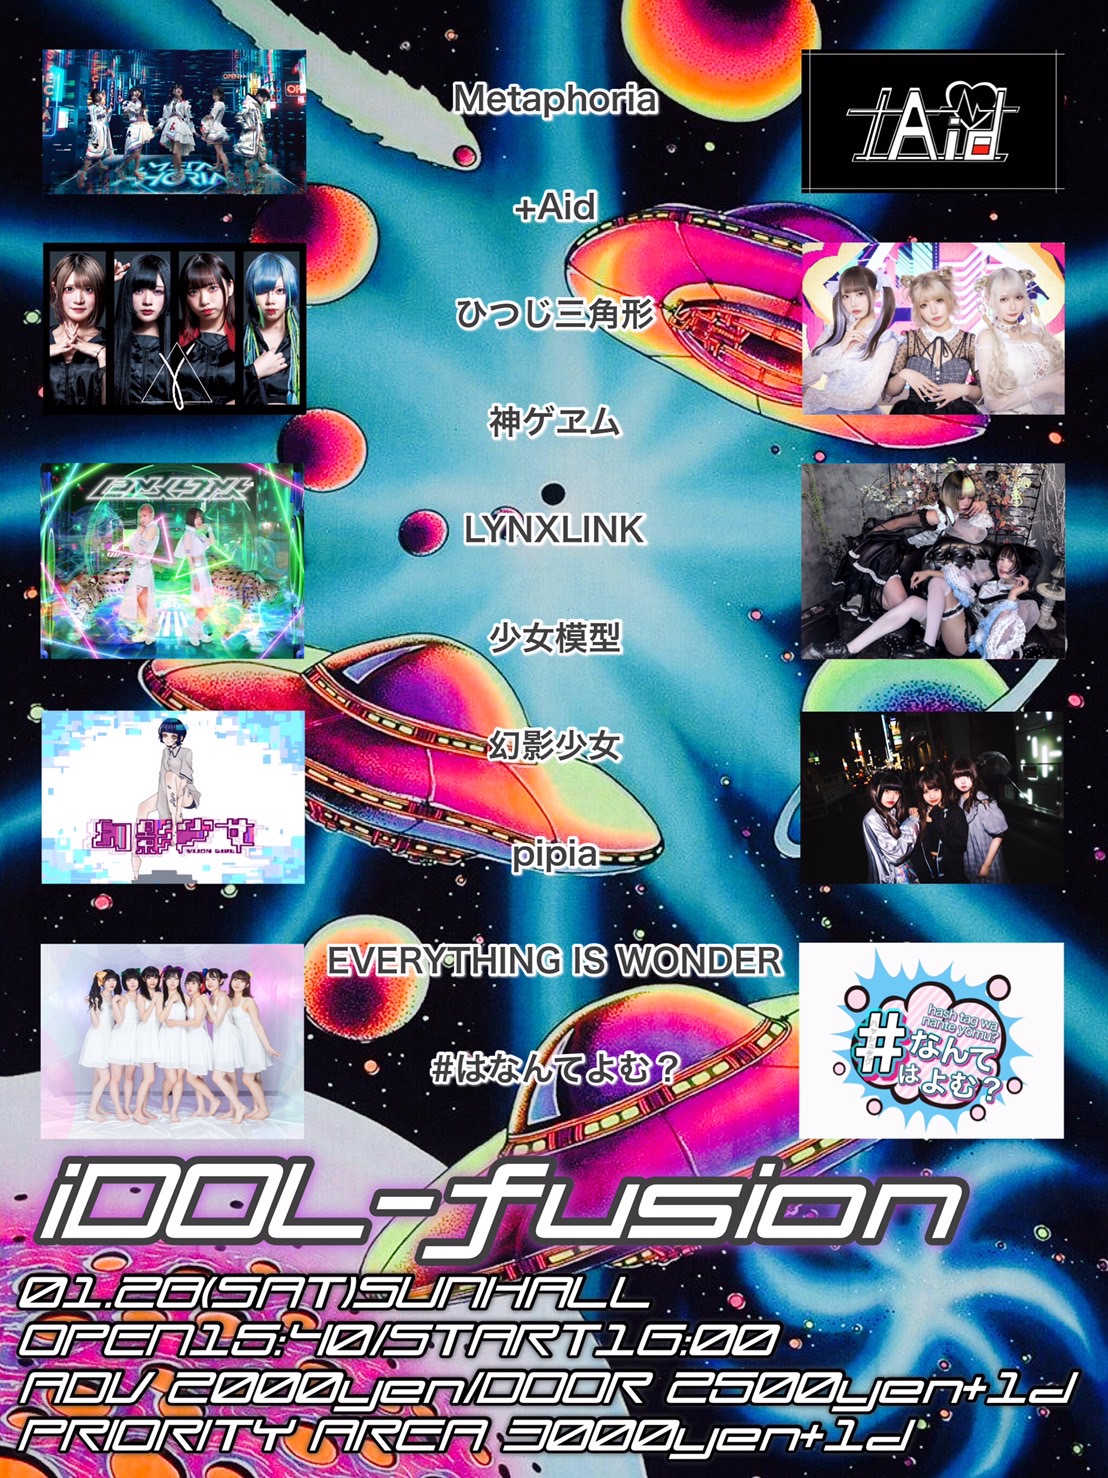 iDOL-fusion